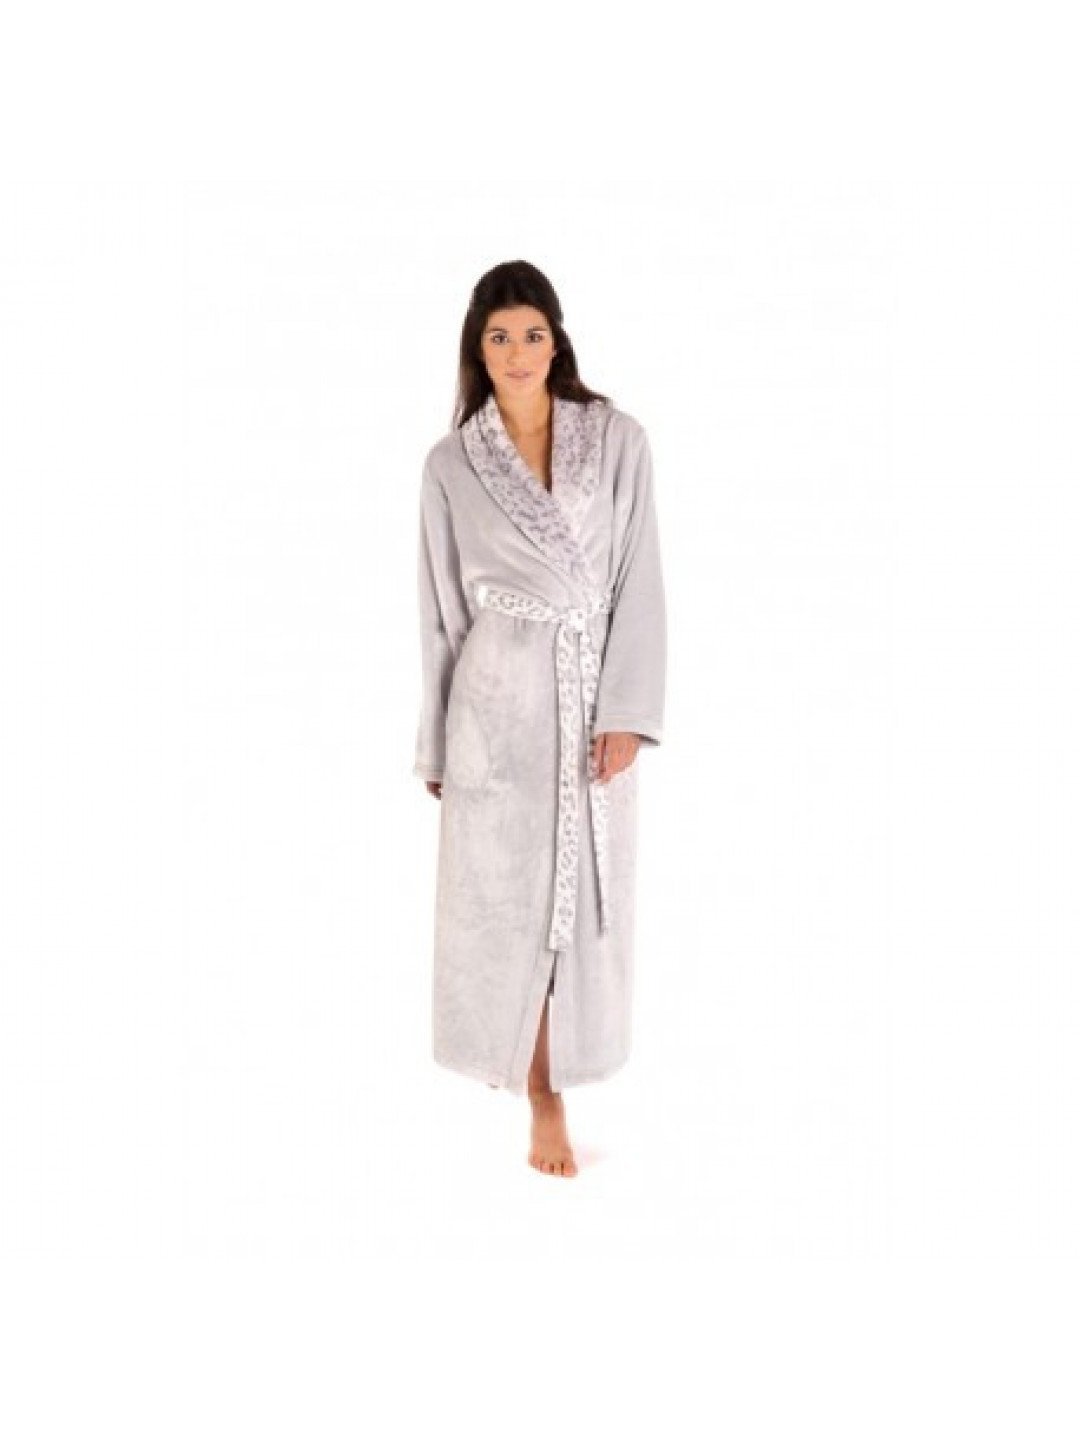 IRBIS 2556 župan se šálovým límcem XXL dlouhý župan se šálovým límcem šedá 9151 flannel fleece – polyester